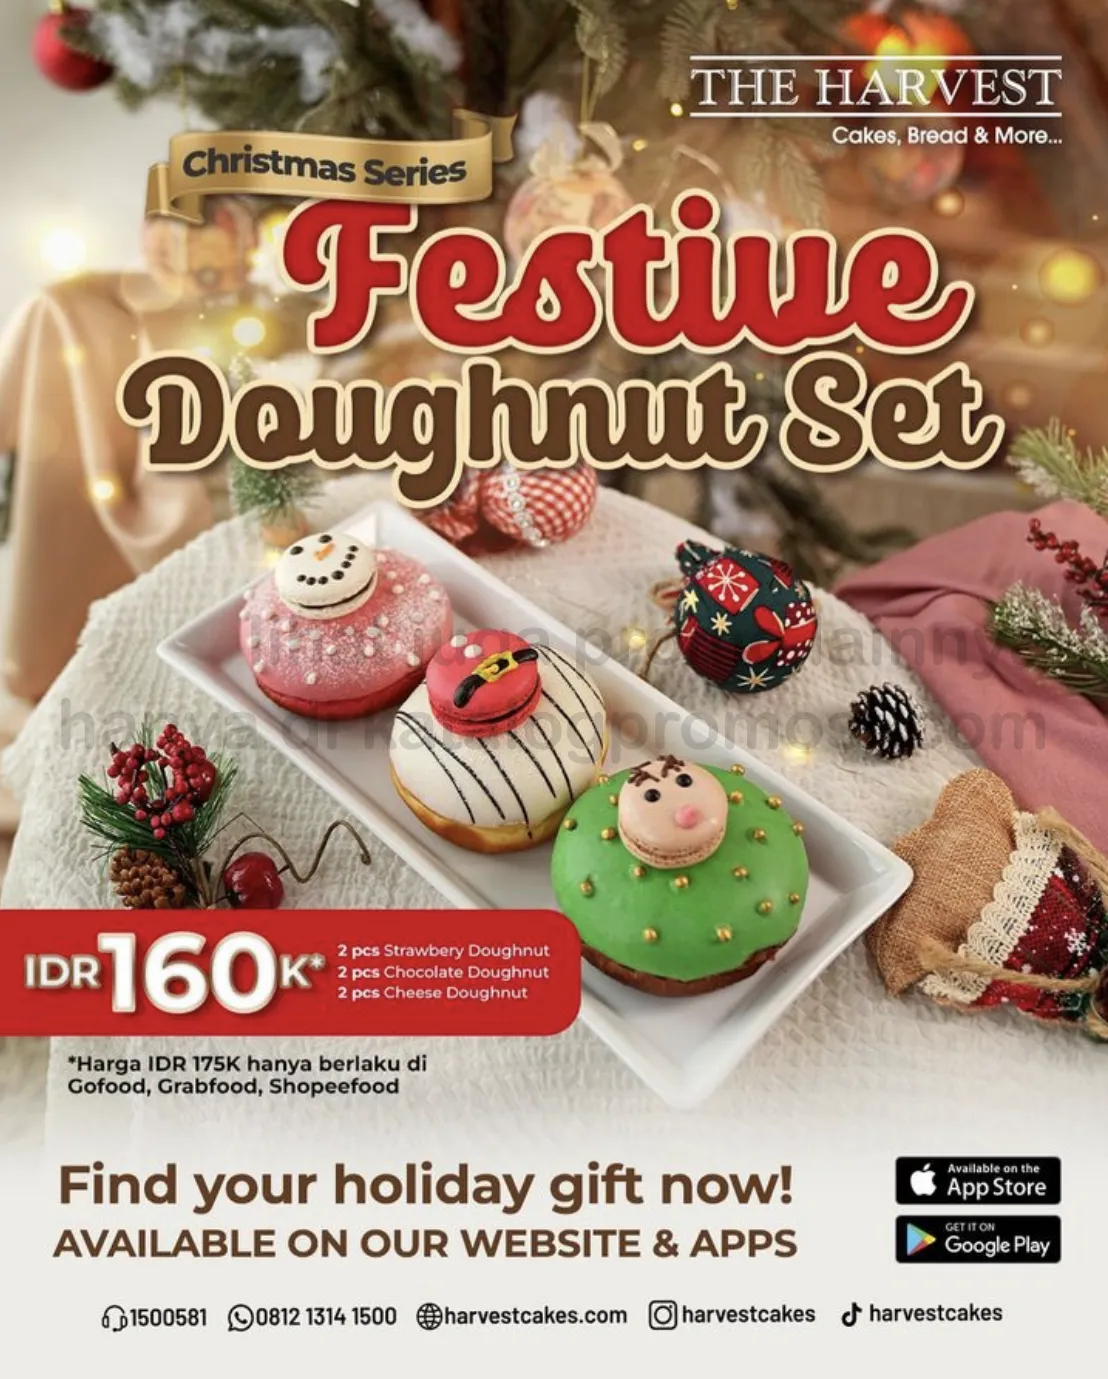 Promo THE HARVEST Festive Doughnut Set harga spesial Rp. 160.000